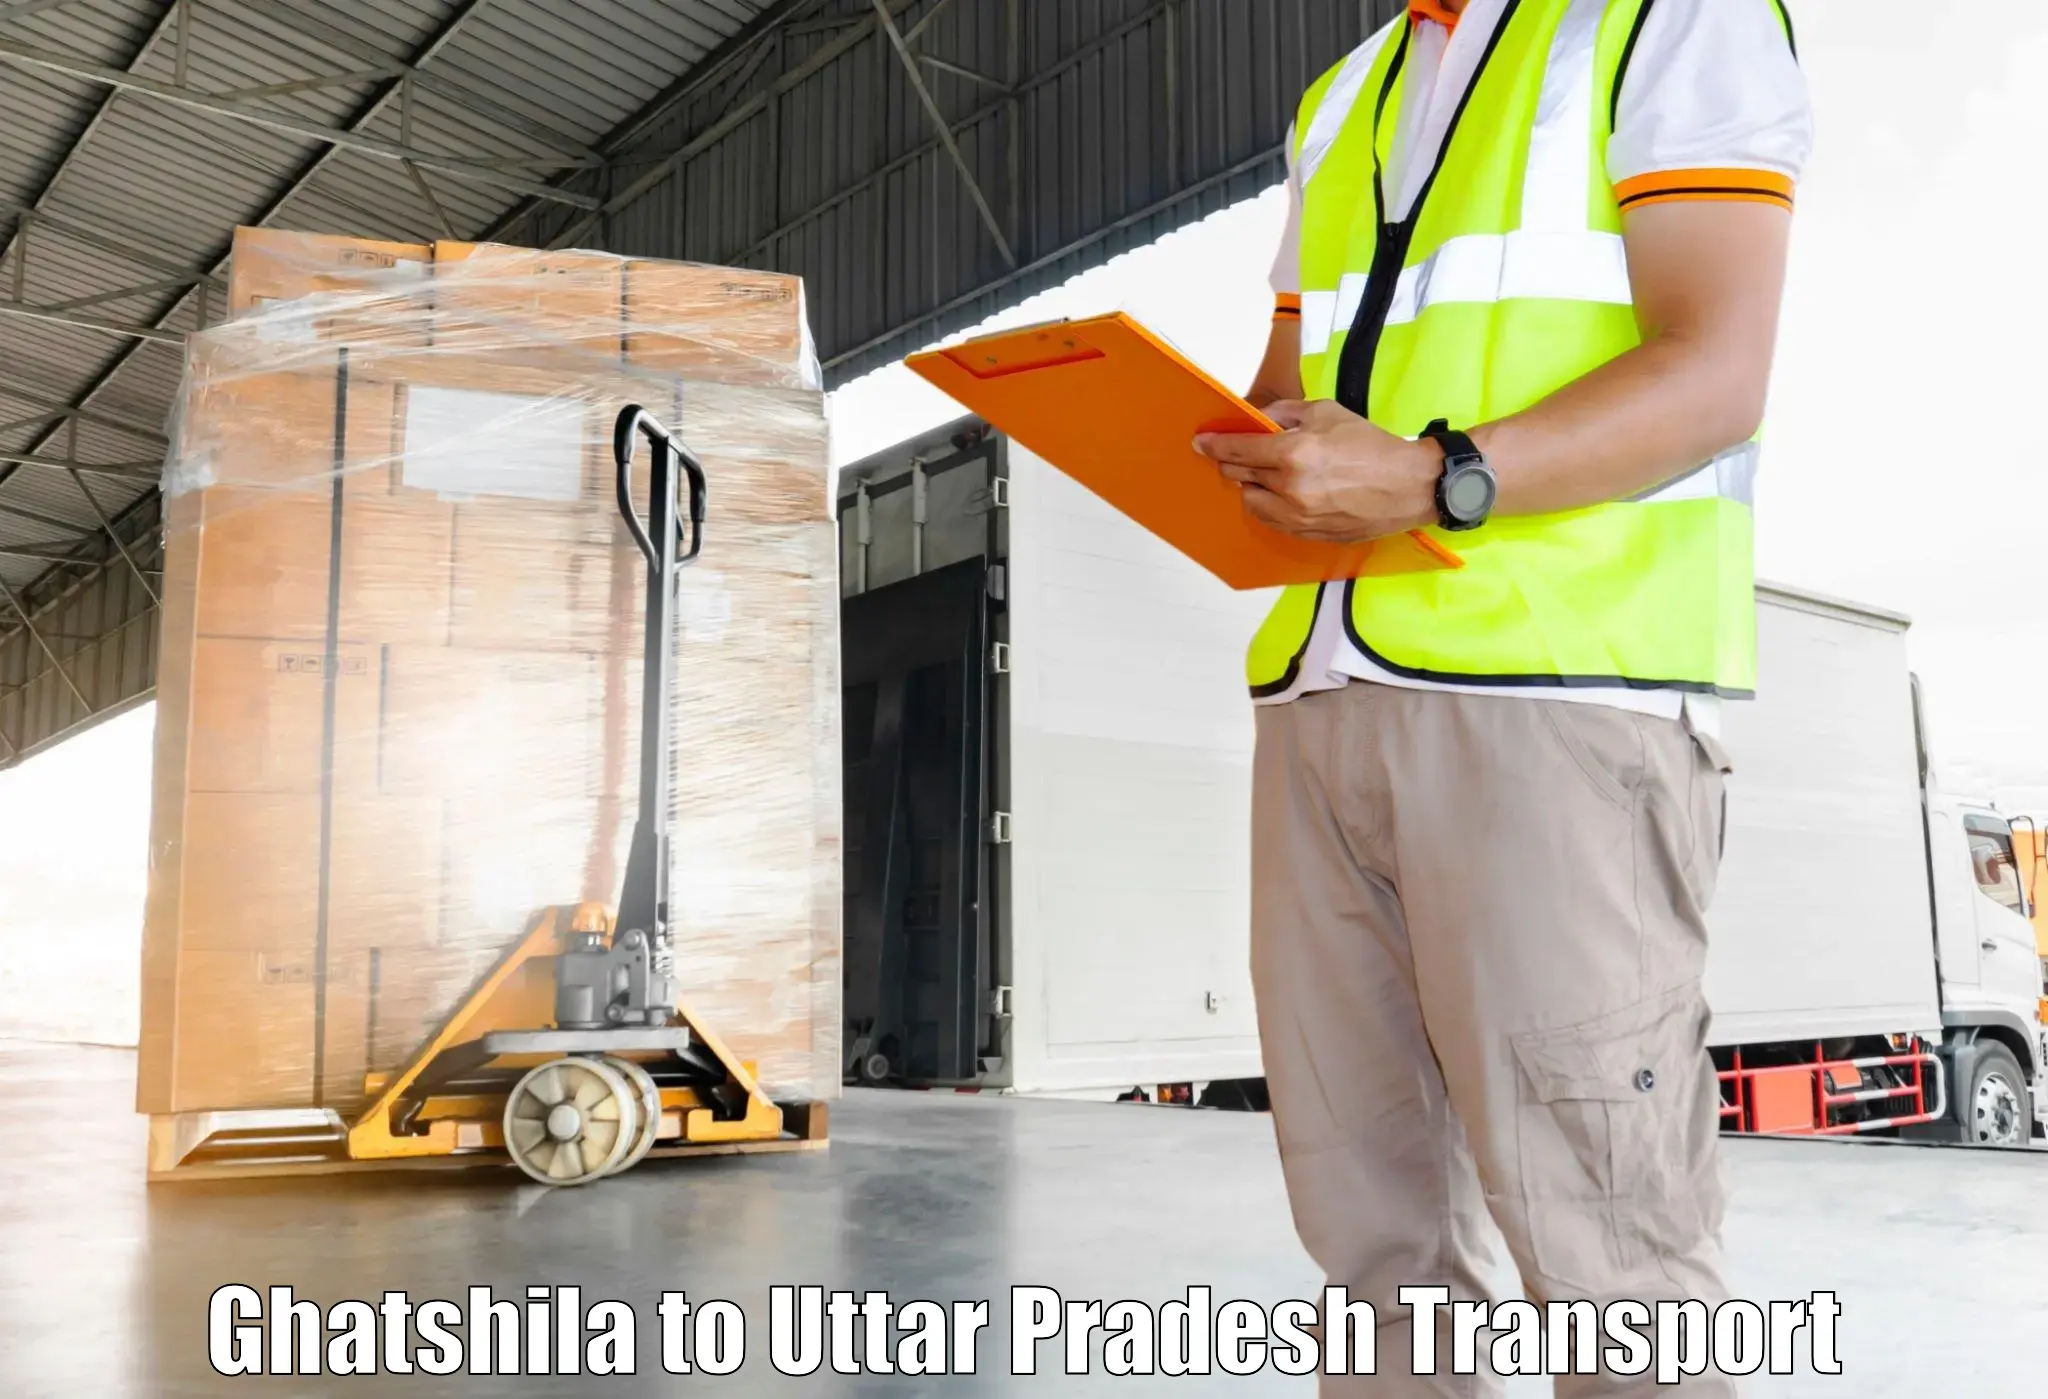 Pick up transport service Ghatshila to Khutar